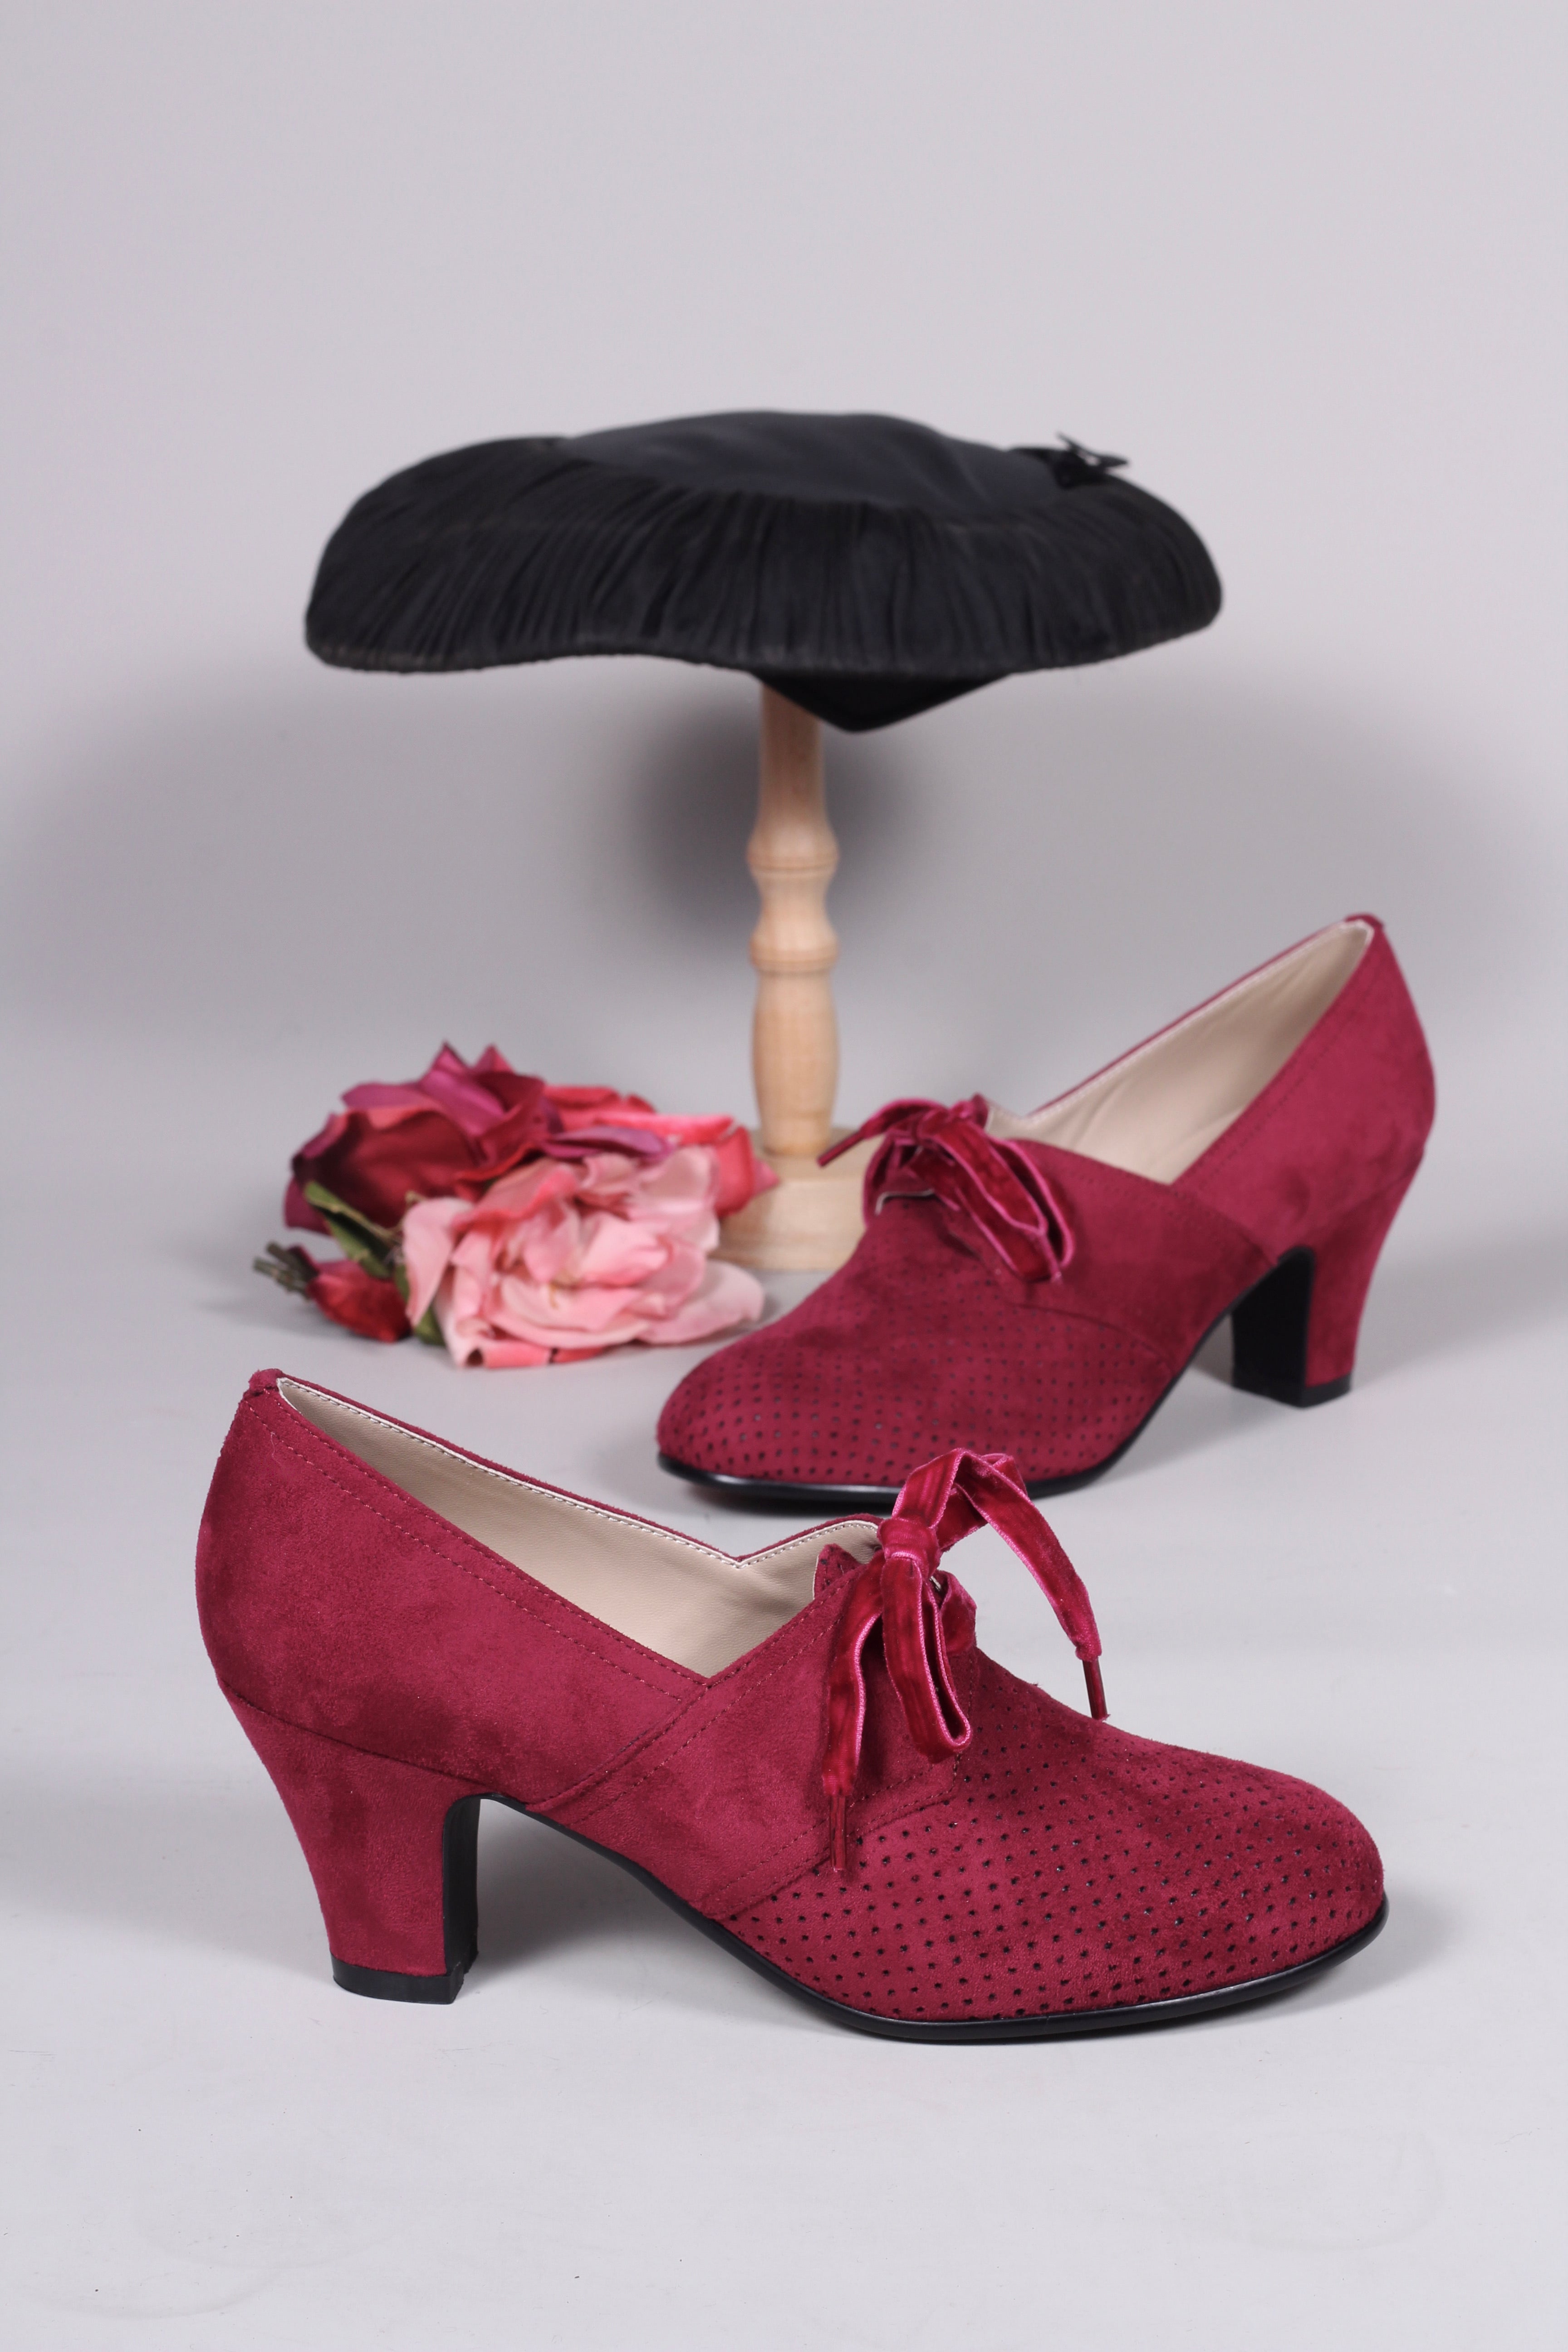 Vegansk sko i vintage style - 40'er vintage style med snøre – Vintage Divine